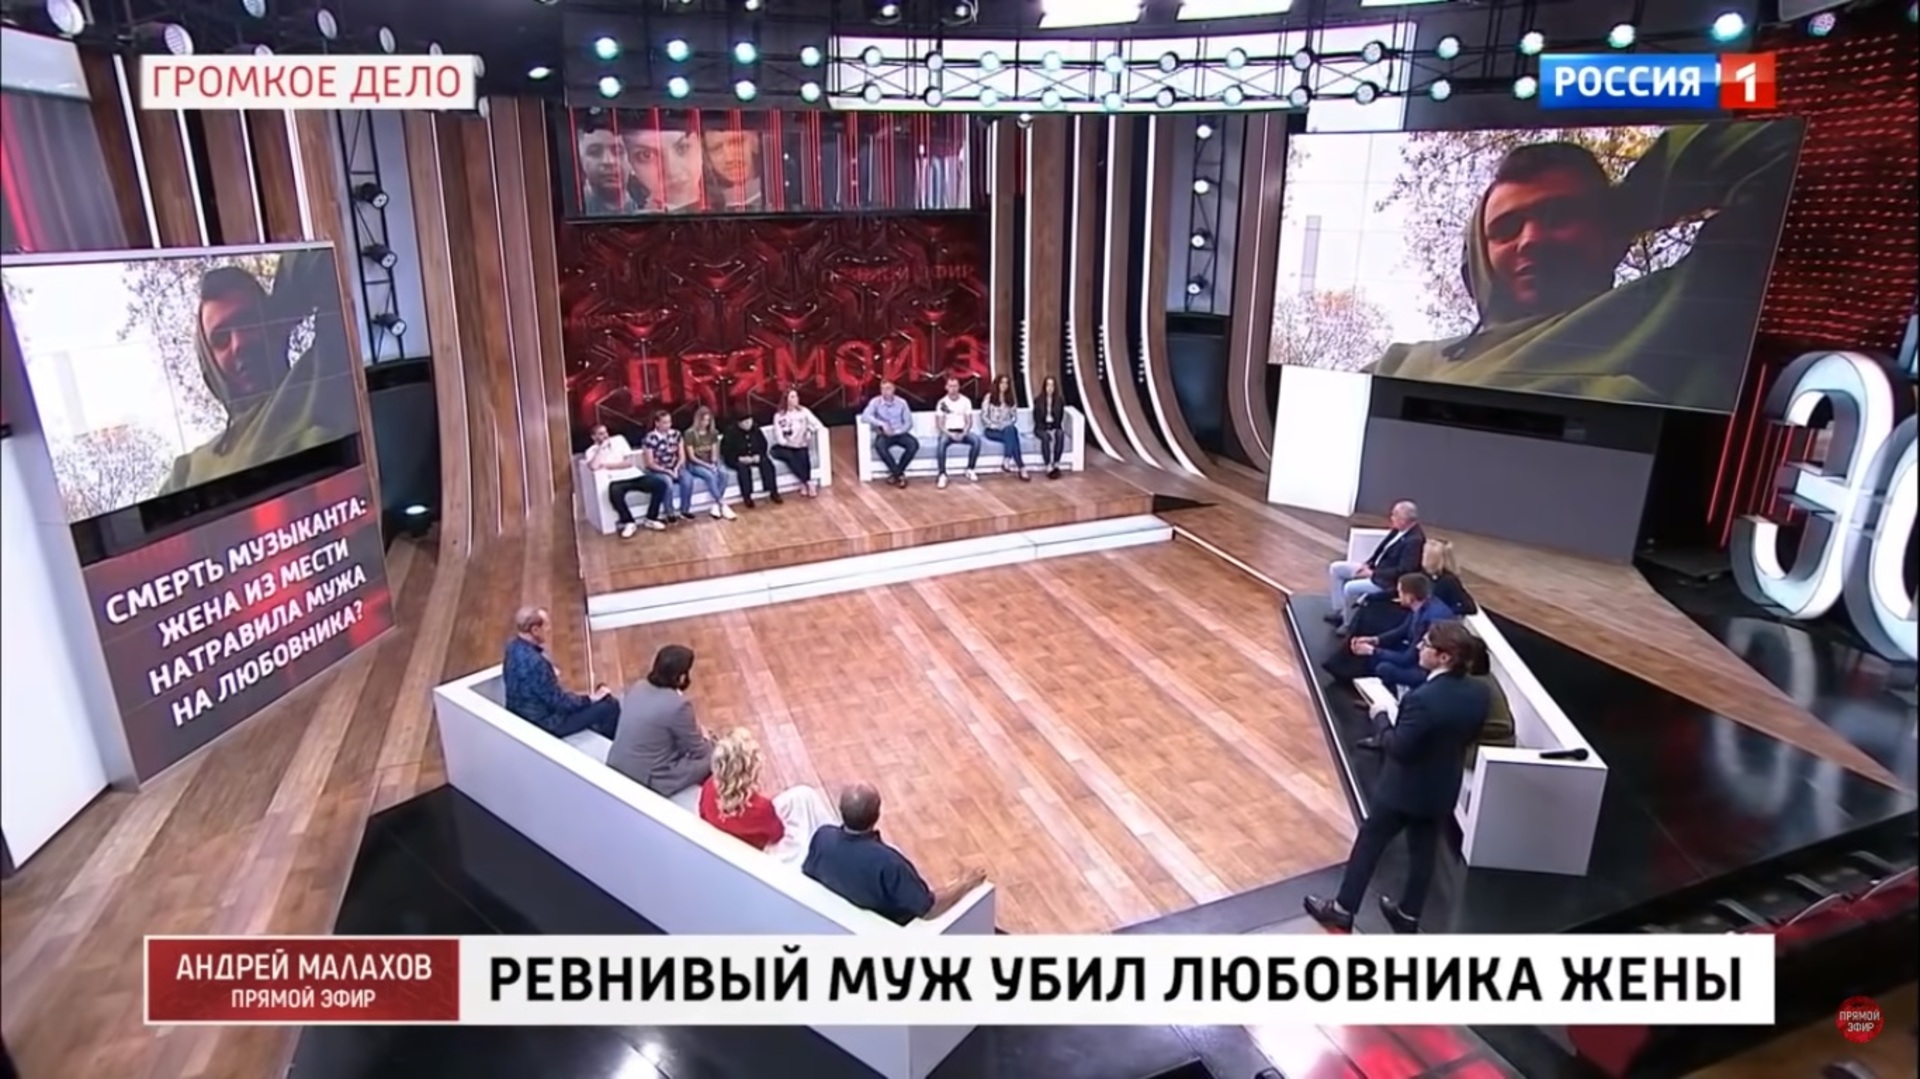 Шоу прямой эфир россия